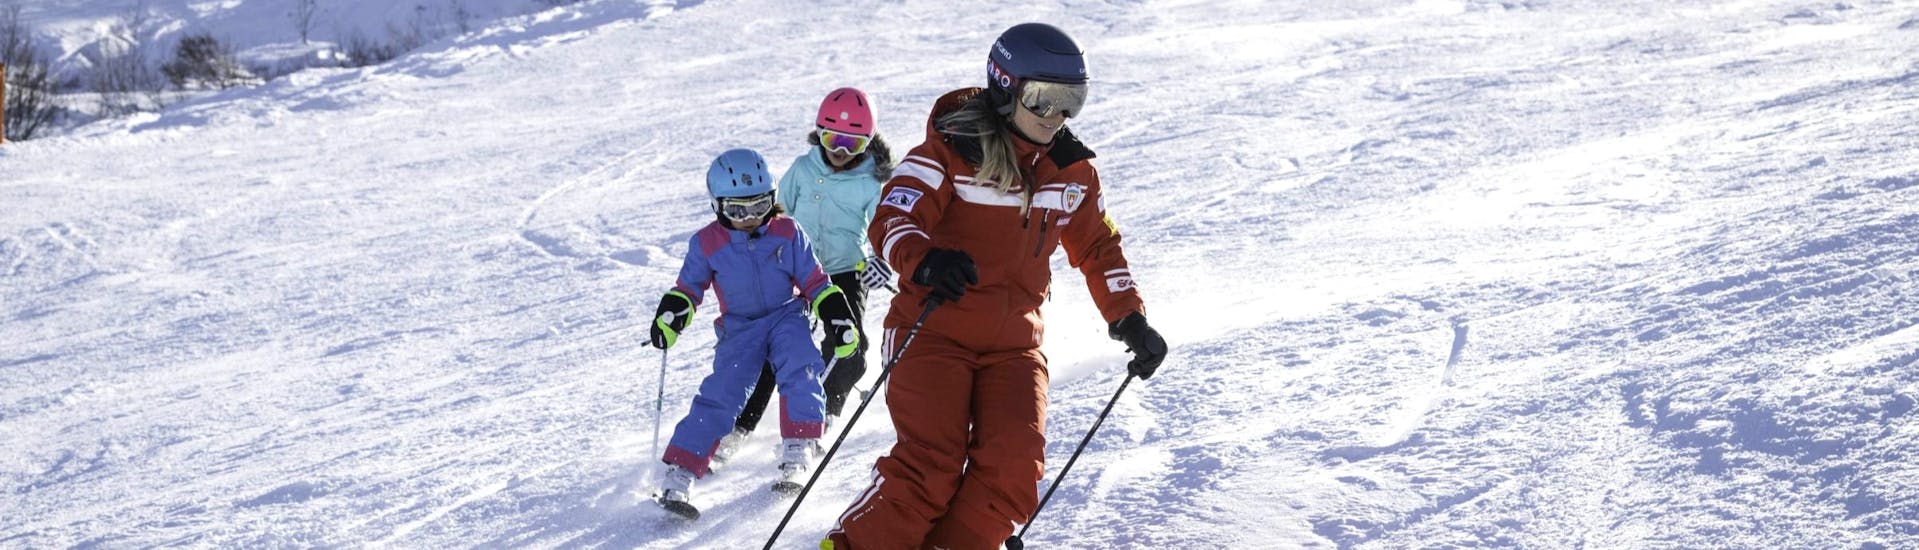 Privé skilessen voor kinderen vanaf 3 jaar.